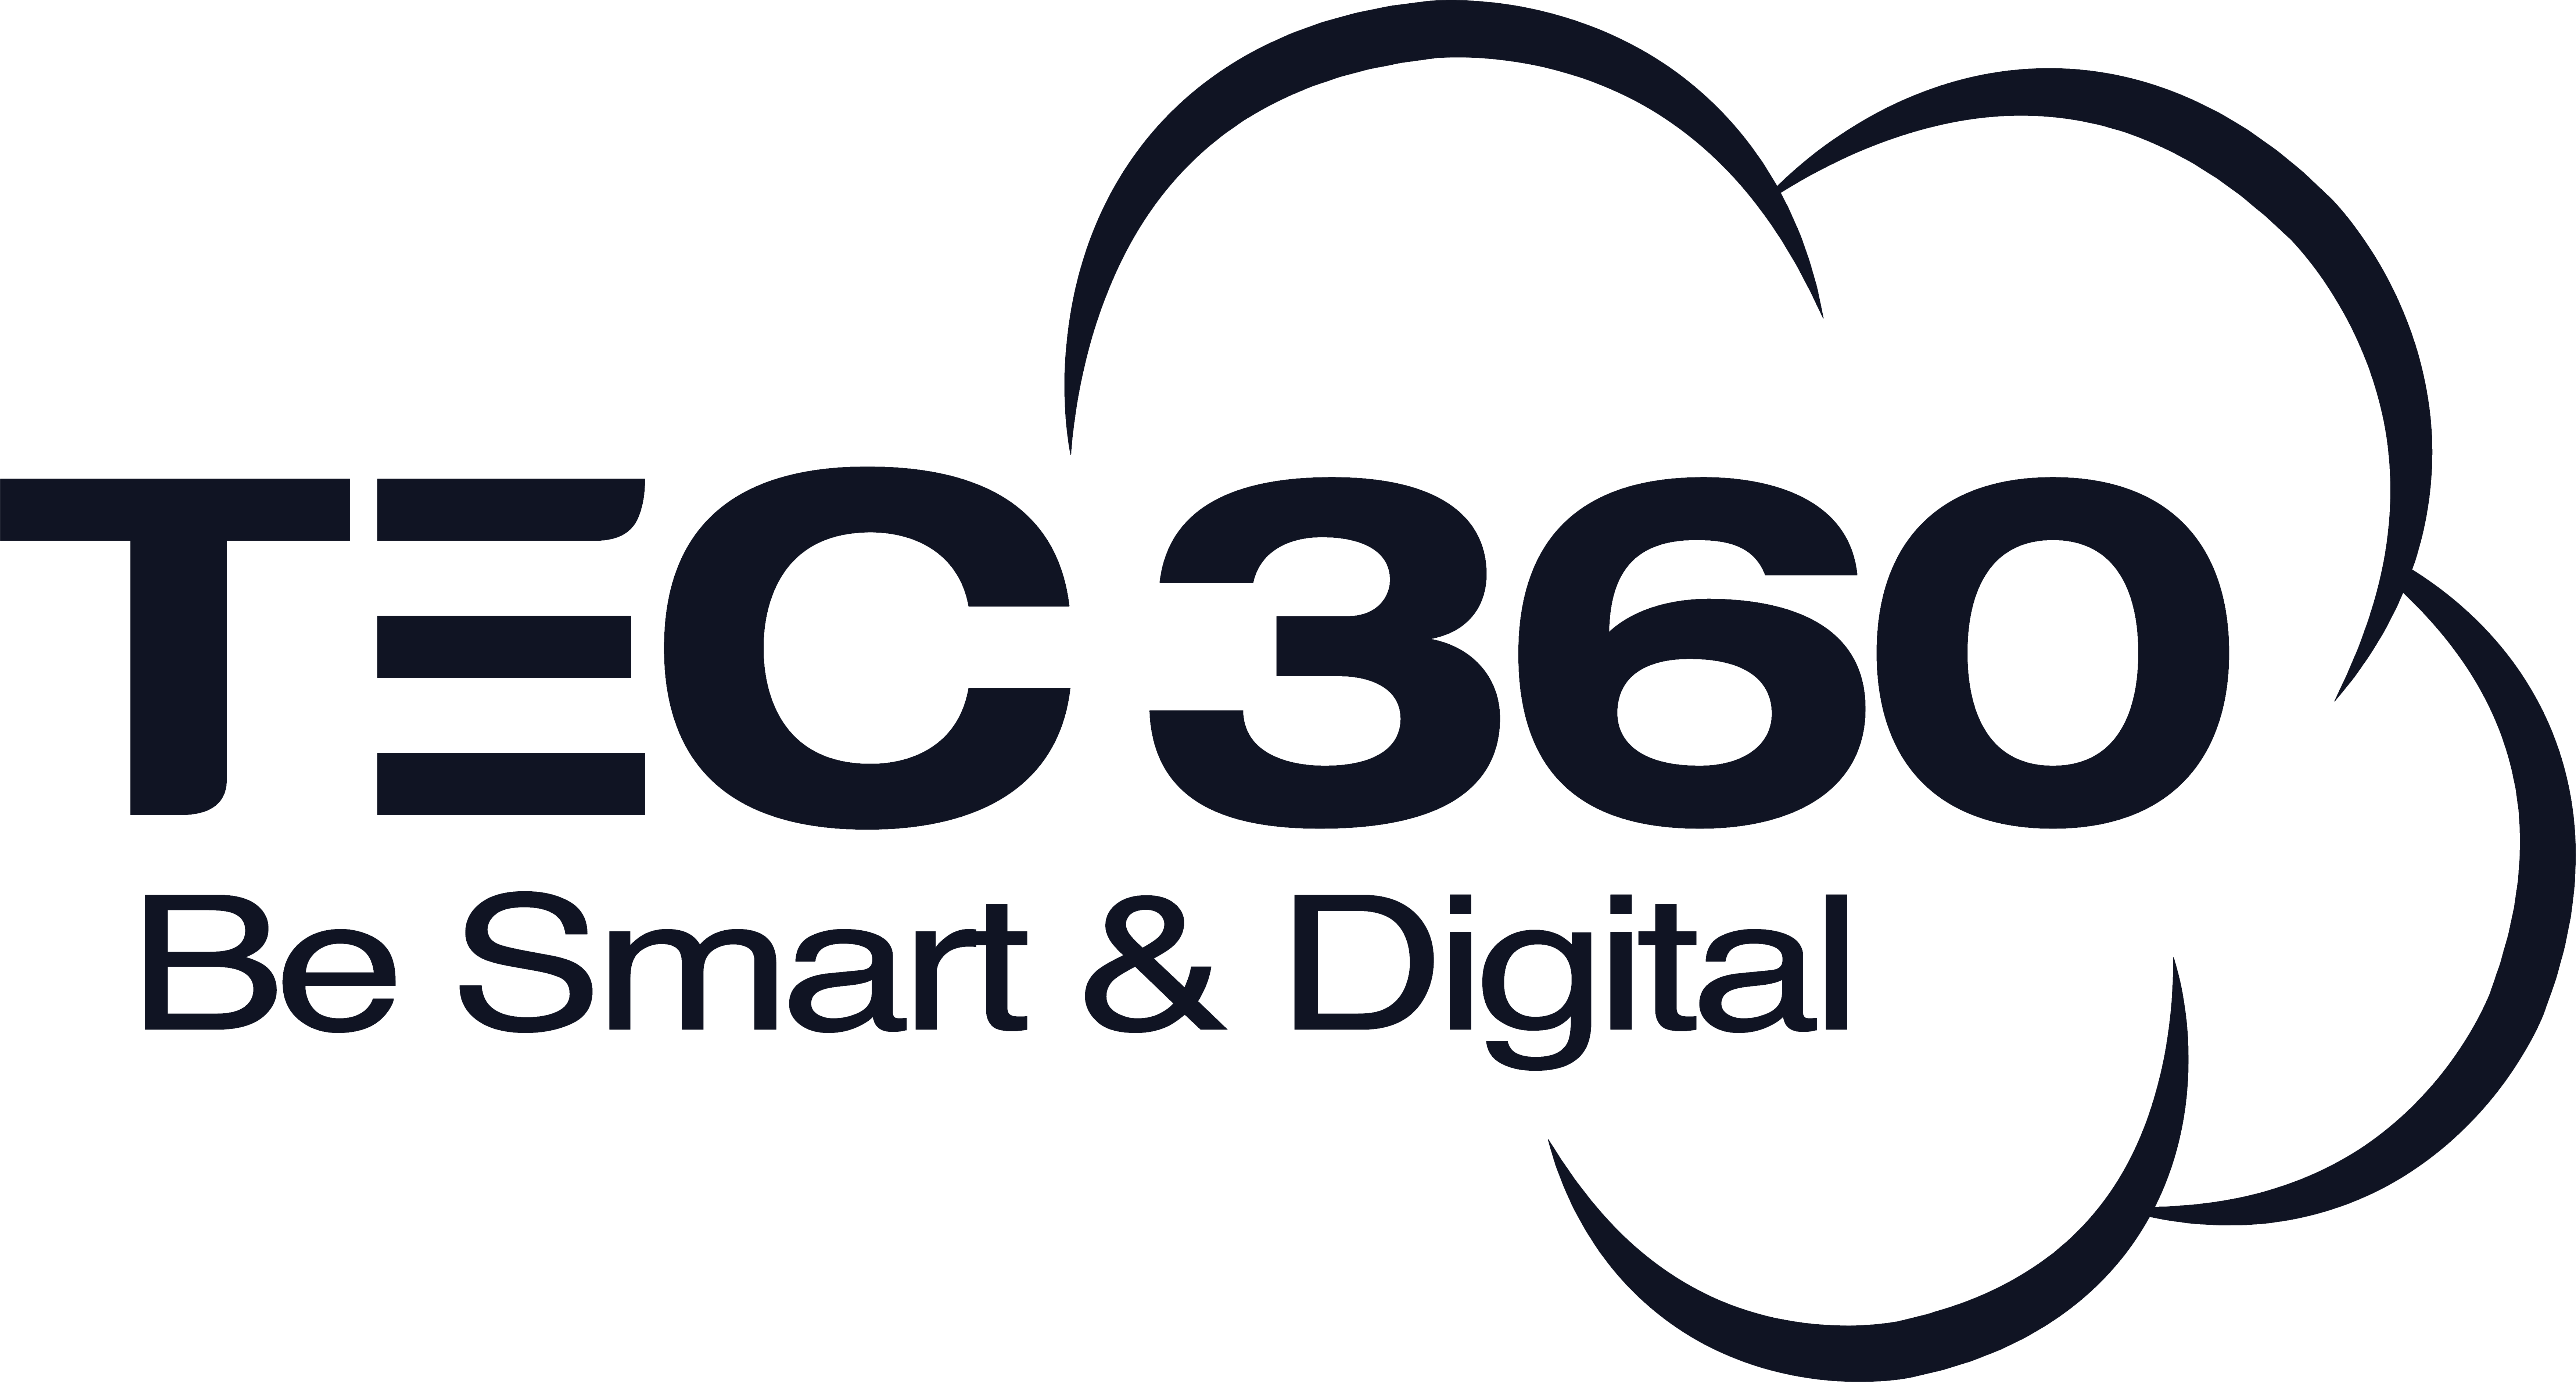 TEC360 logo